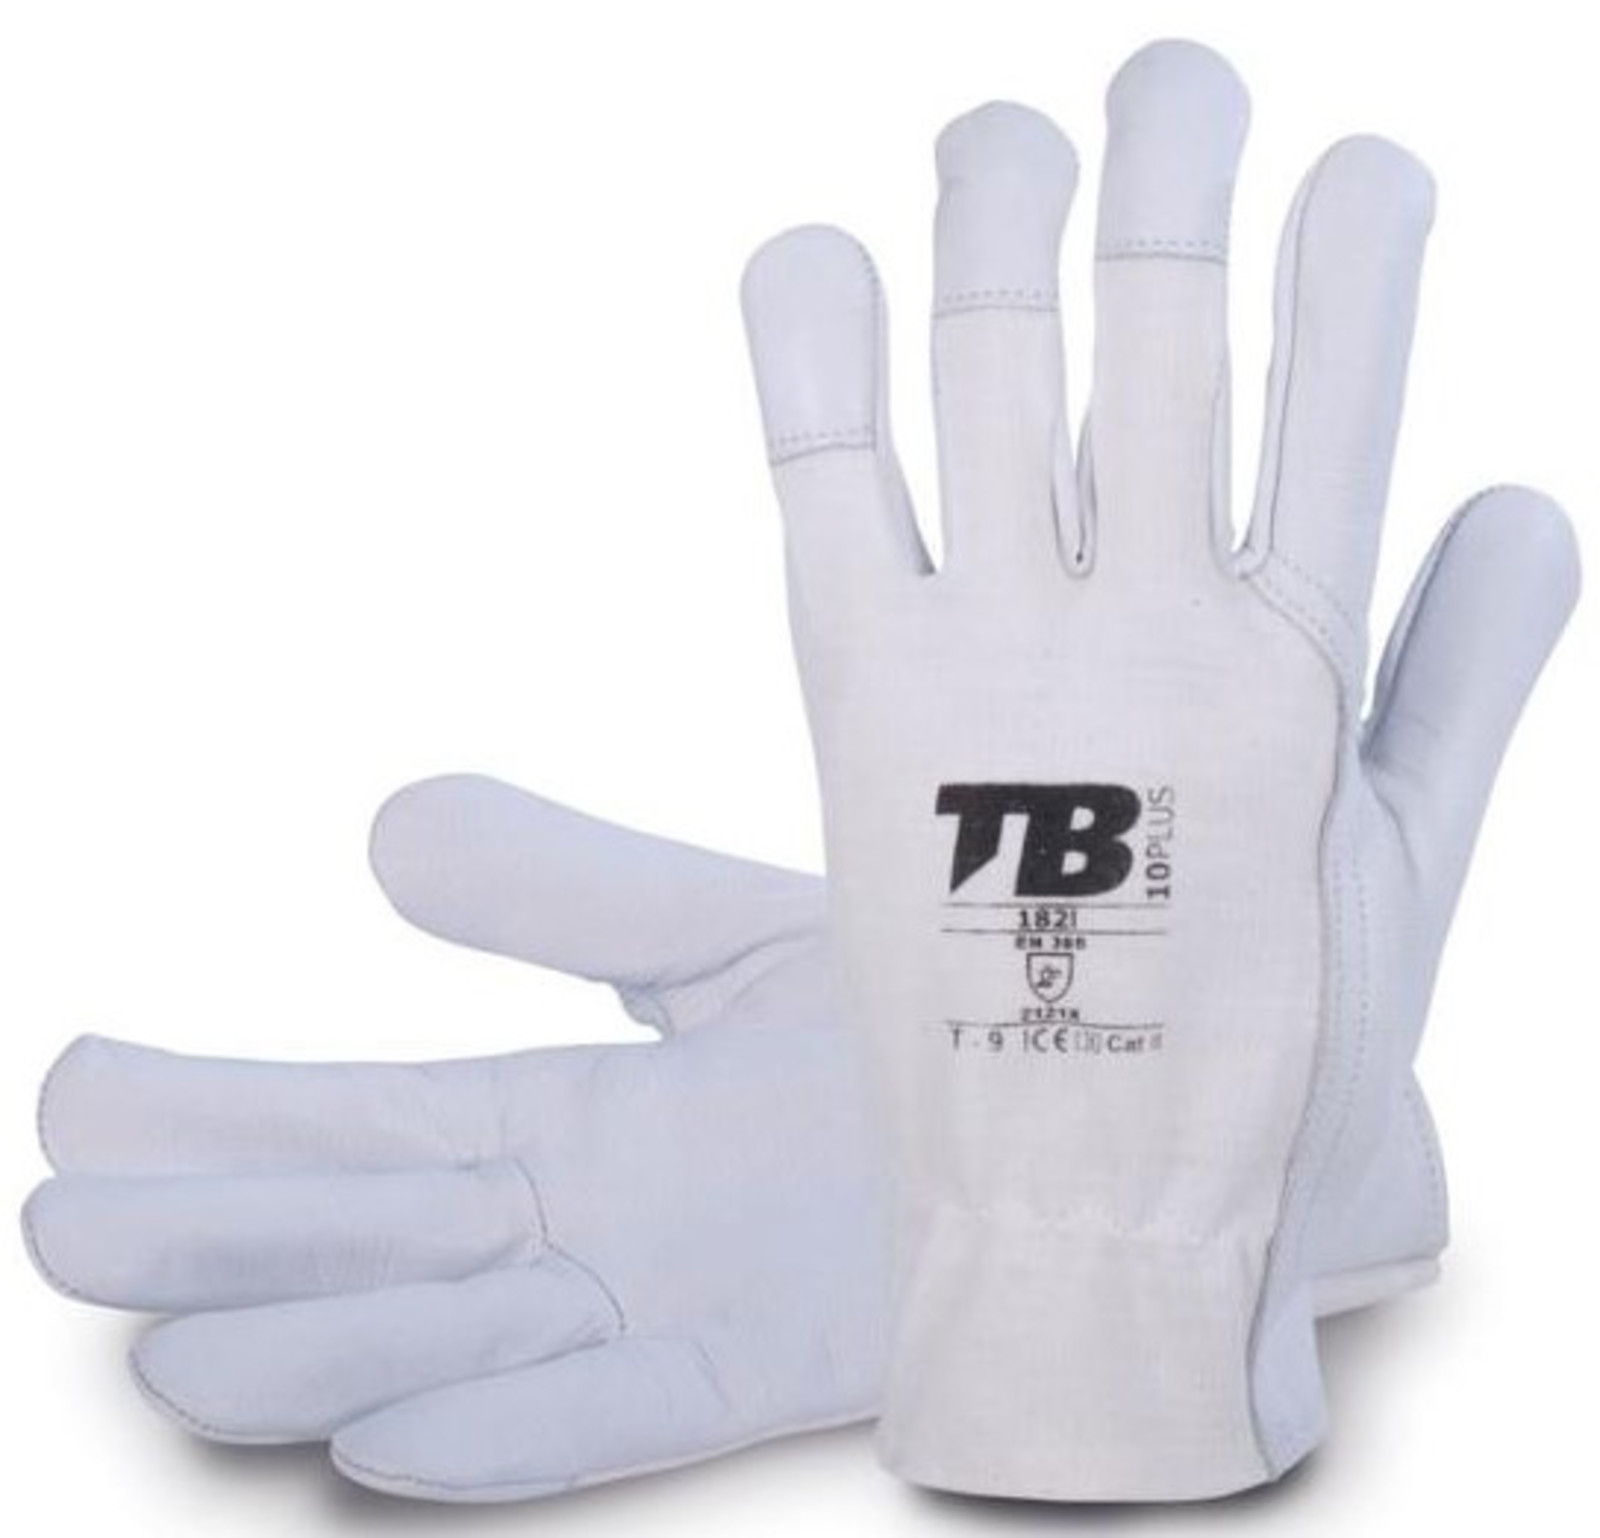 Pracovné rukavice TB 182IB kombinované - veľkosť: 7/S